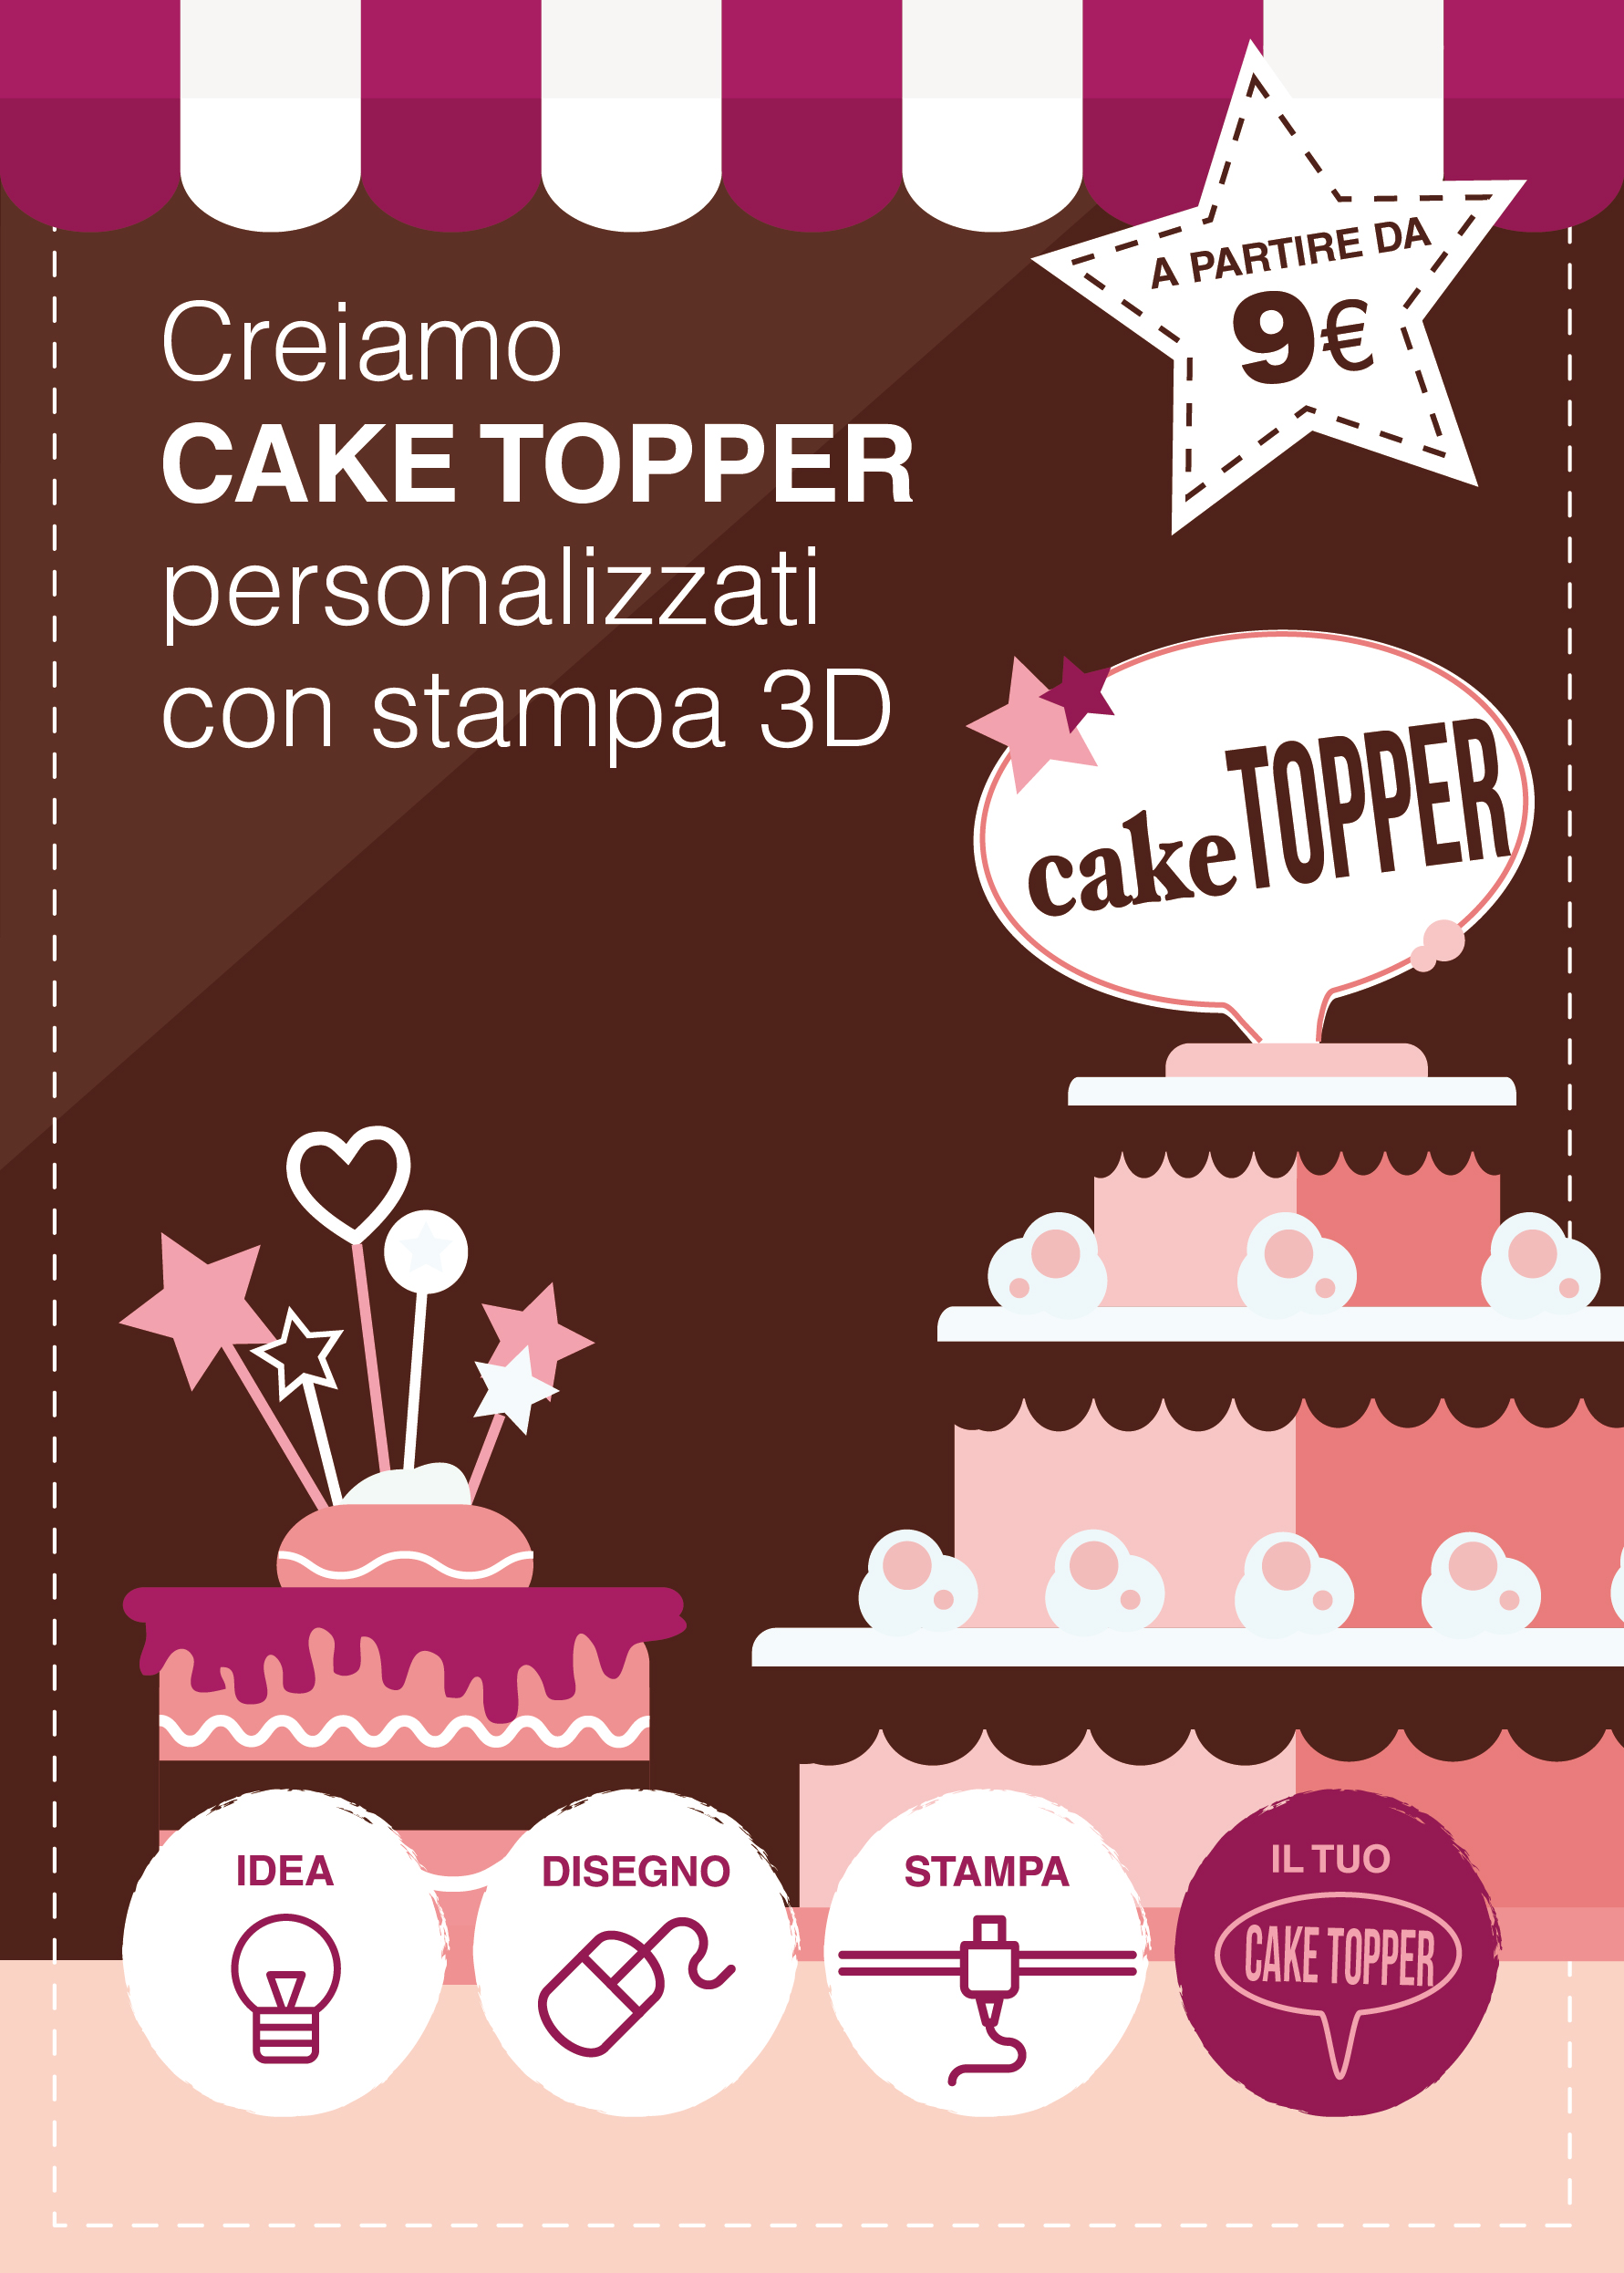 Cake topper personalizzati con stampa 3D